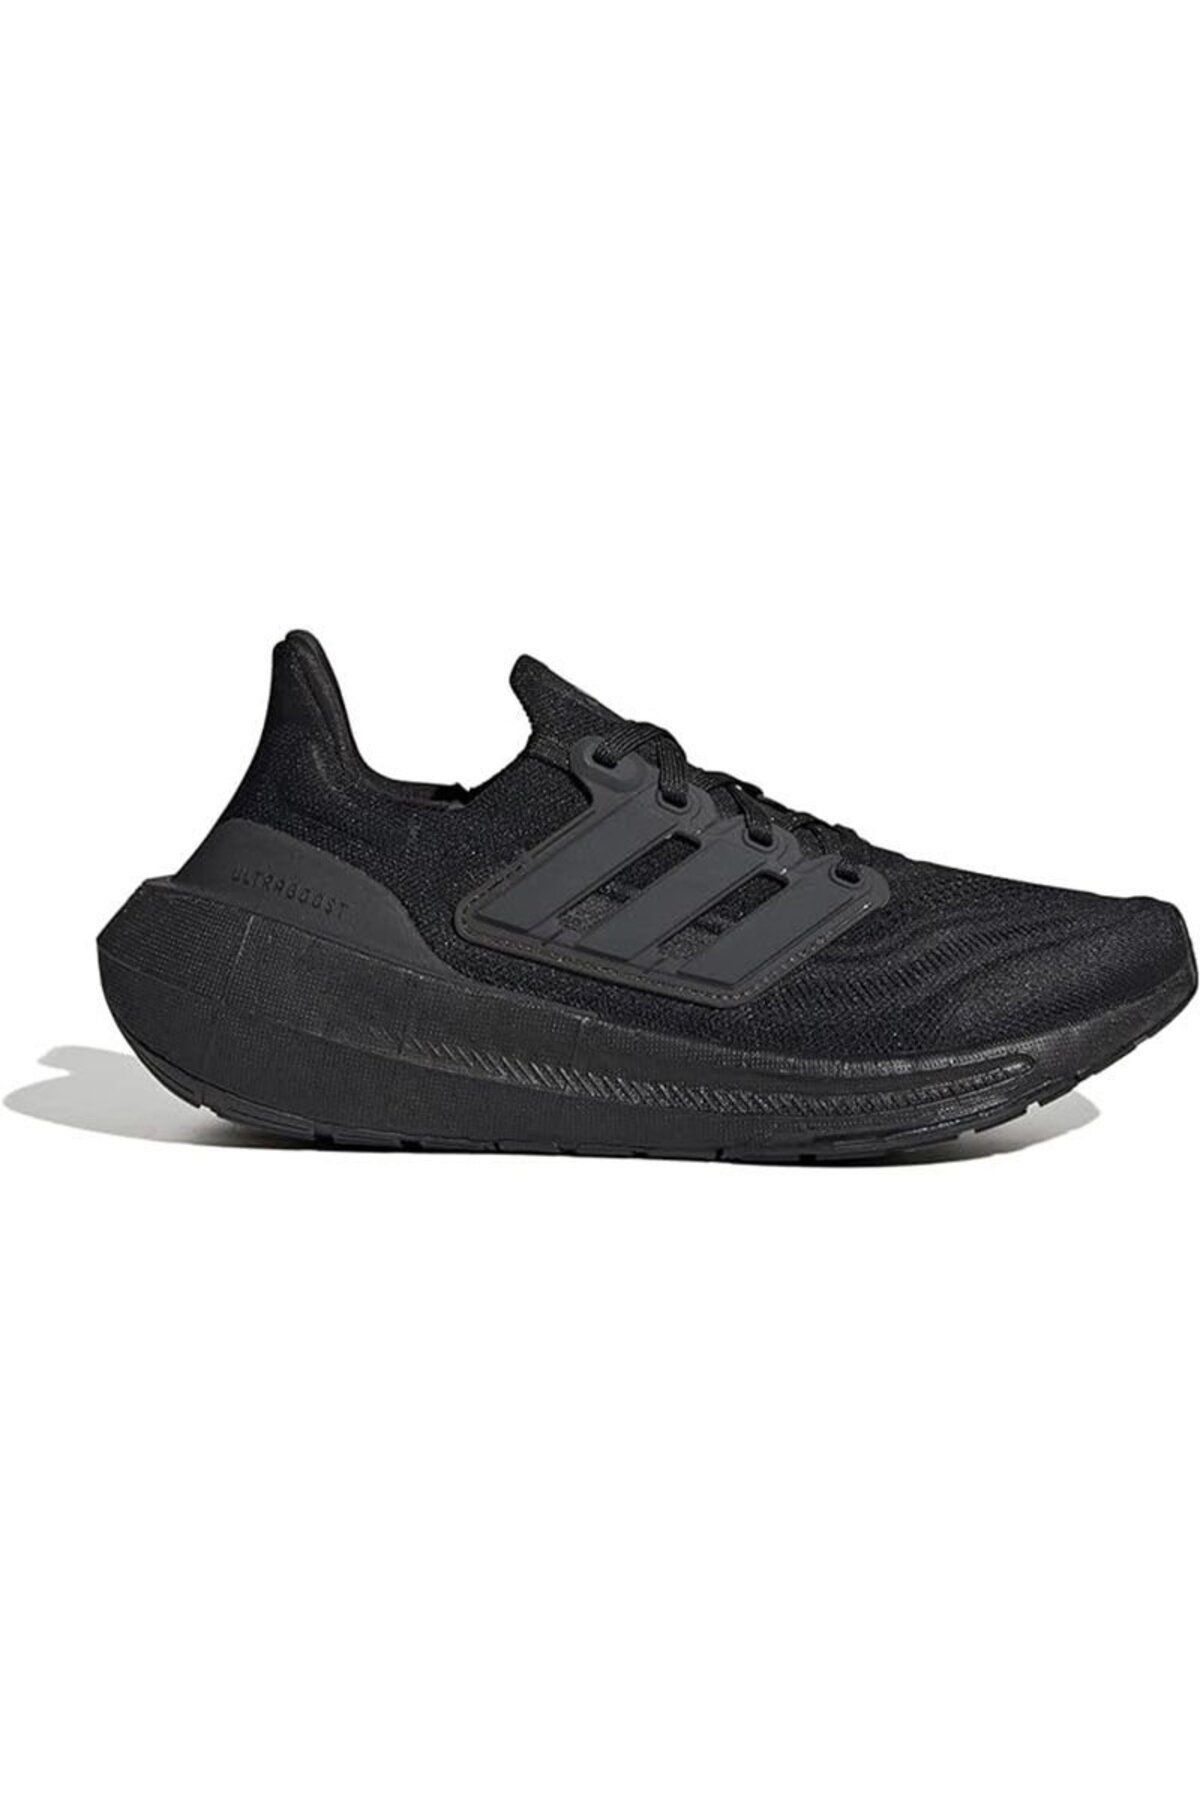 adidas Ultraboost Light Kadın Koşu Ayakkabısı